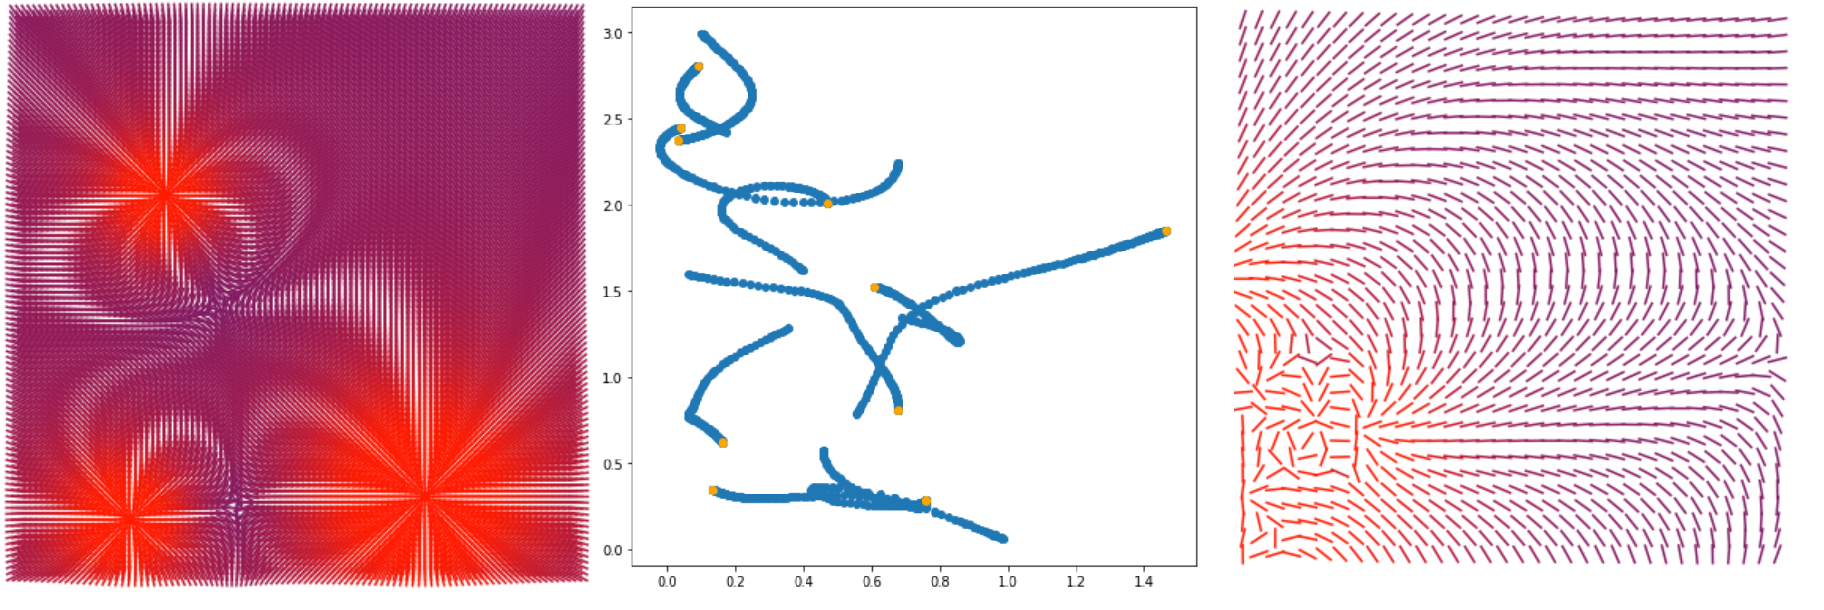 Элементарная симуляция кастомного физического взаимодействия на python + matplotlib - 1